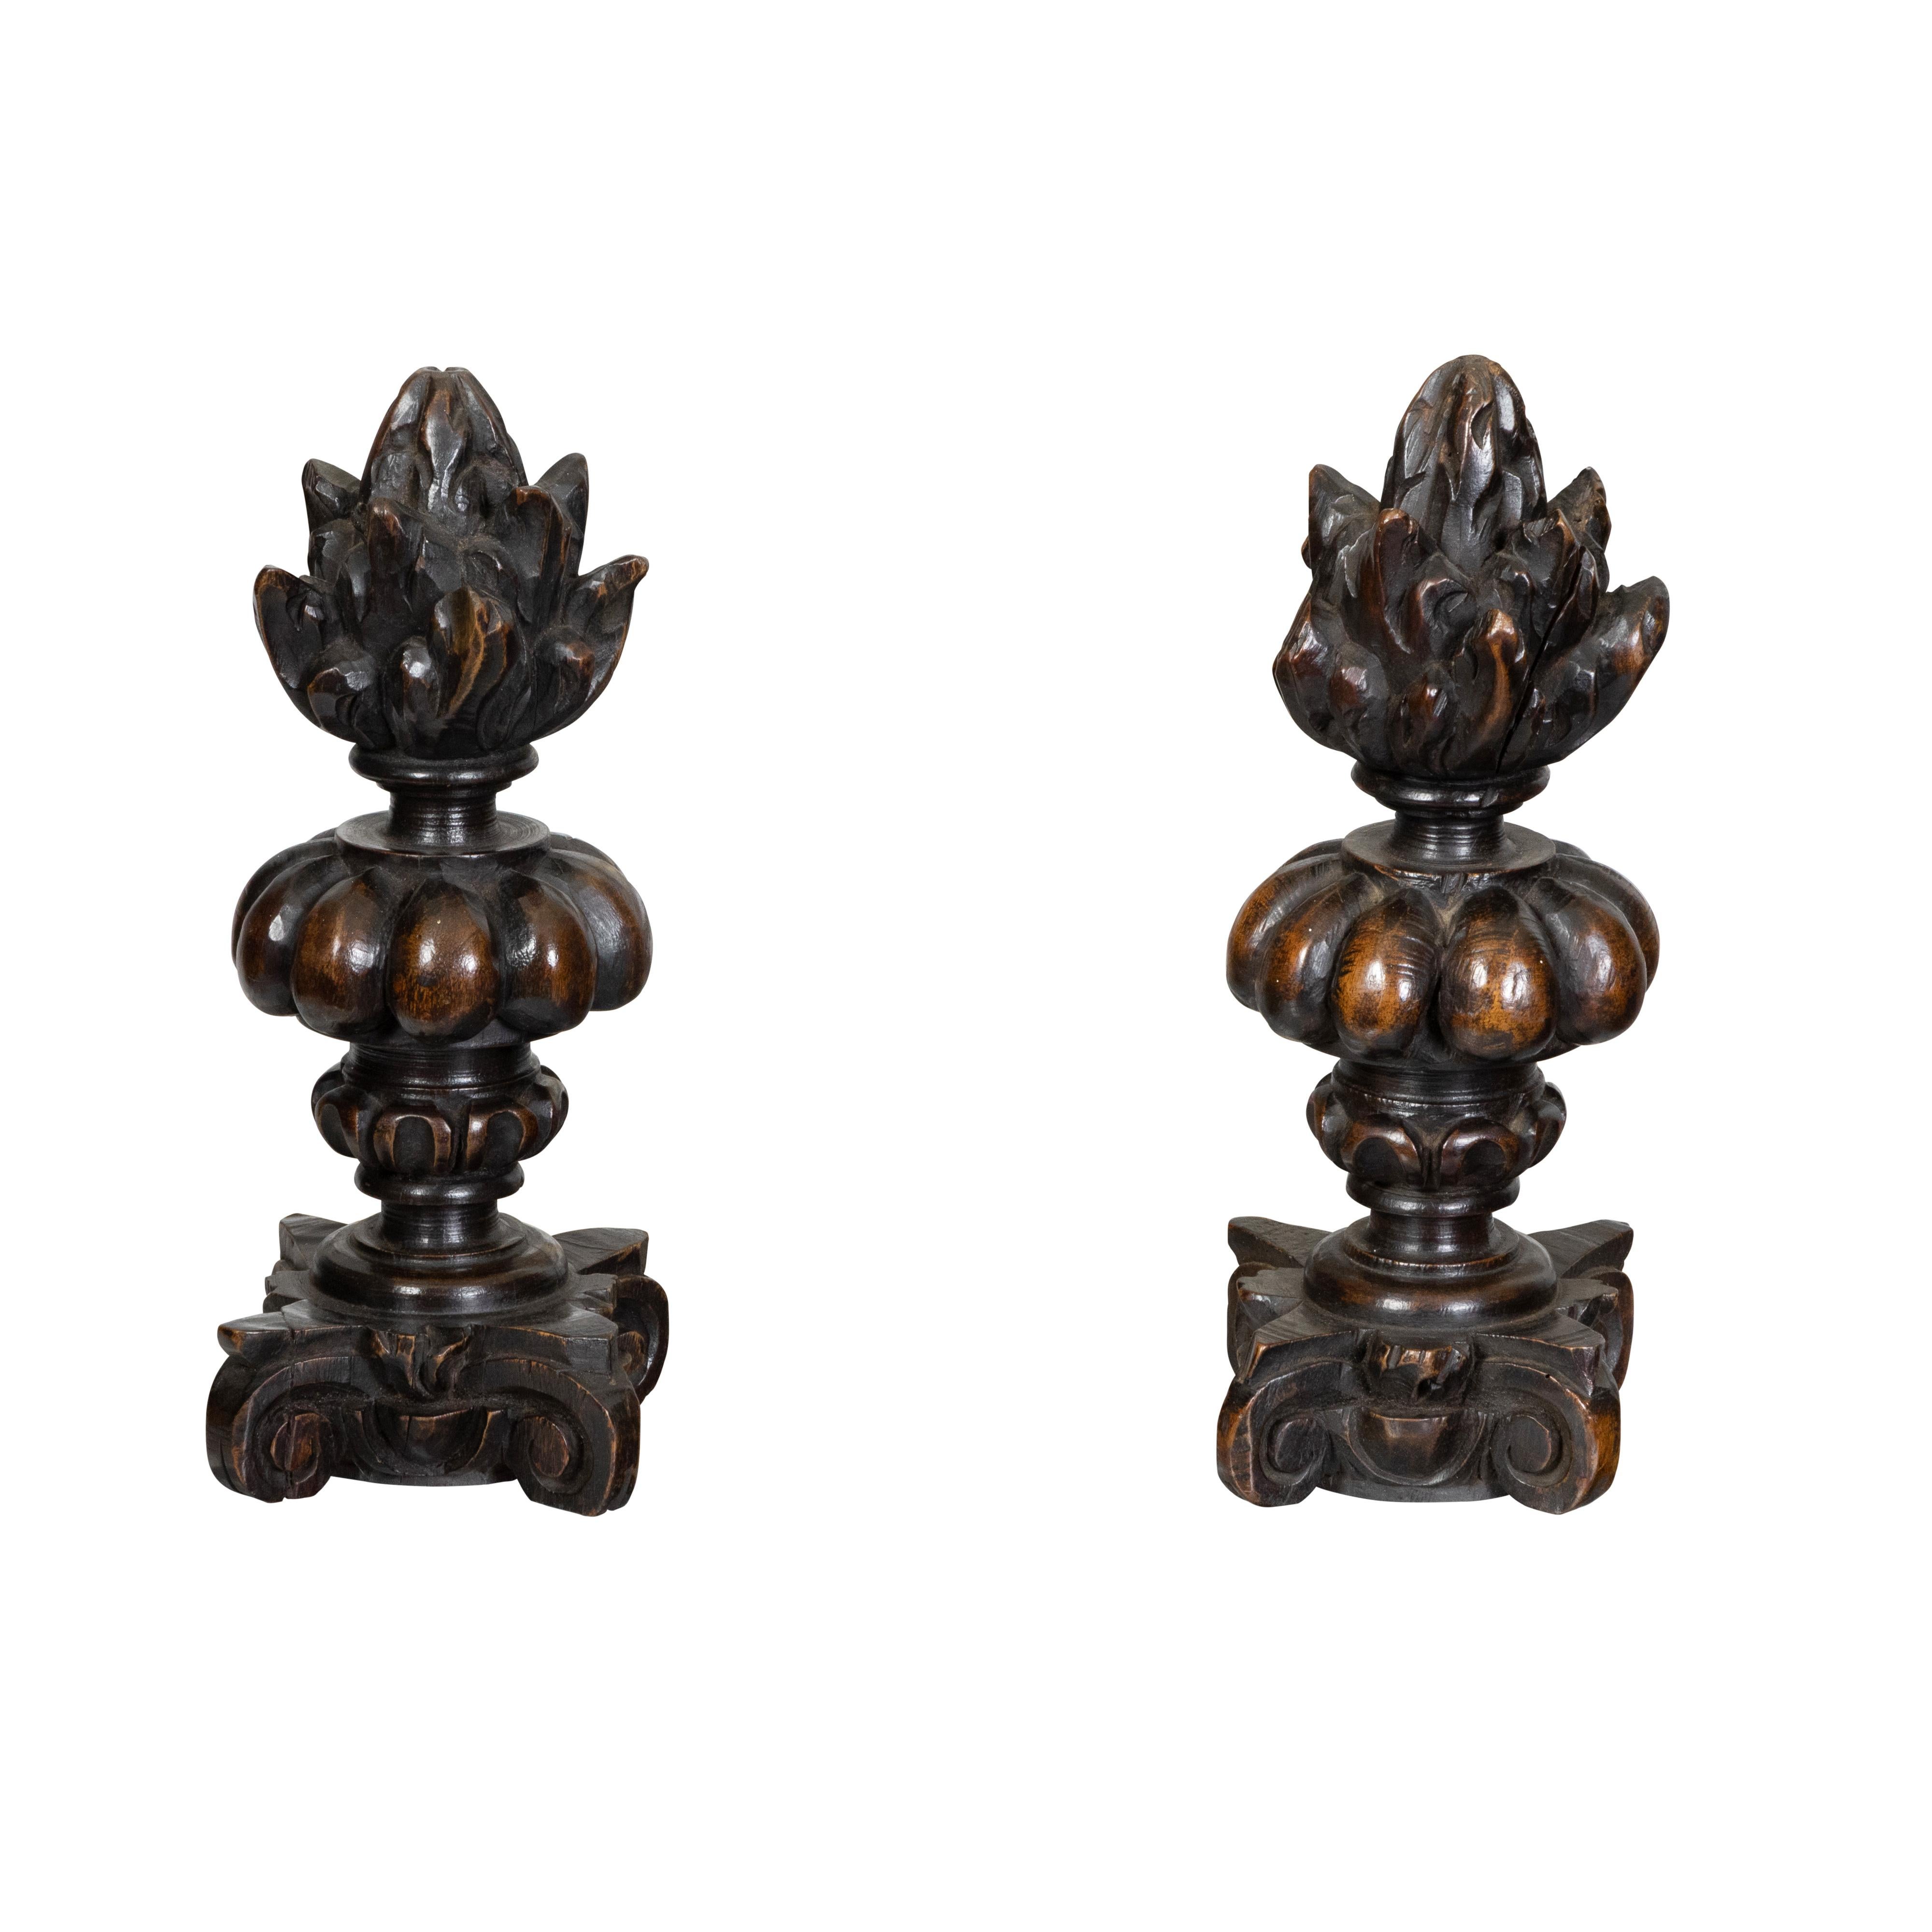 Paar geschnitzte italienische Pot-à-feu-Skulpturen aus Holz des 19. Jahrhunderts auf Sockeln aus Lucit